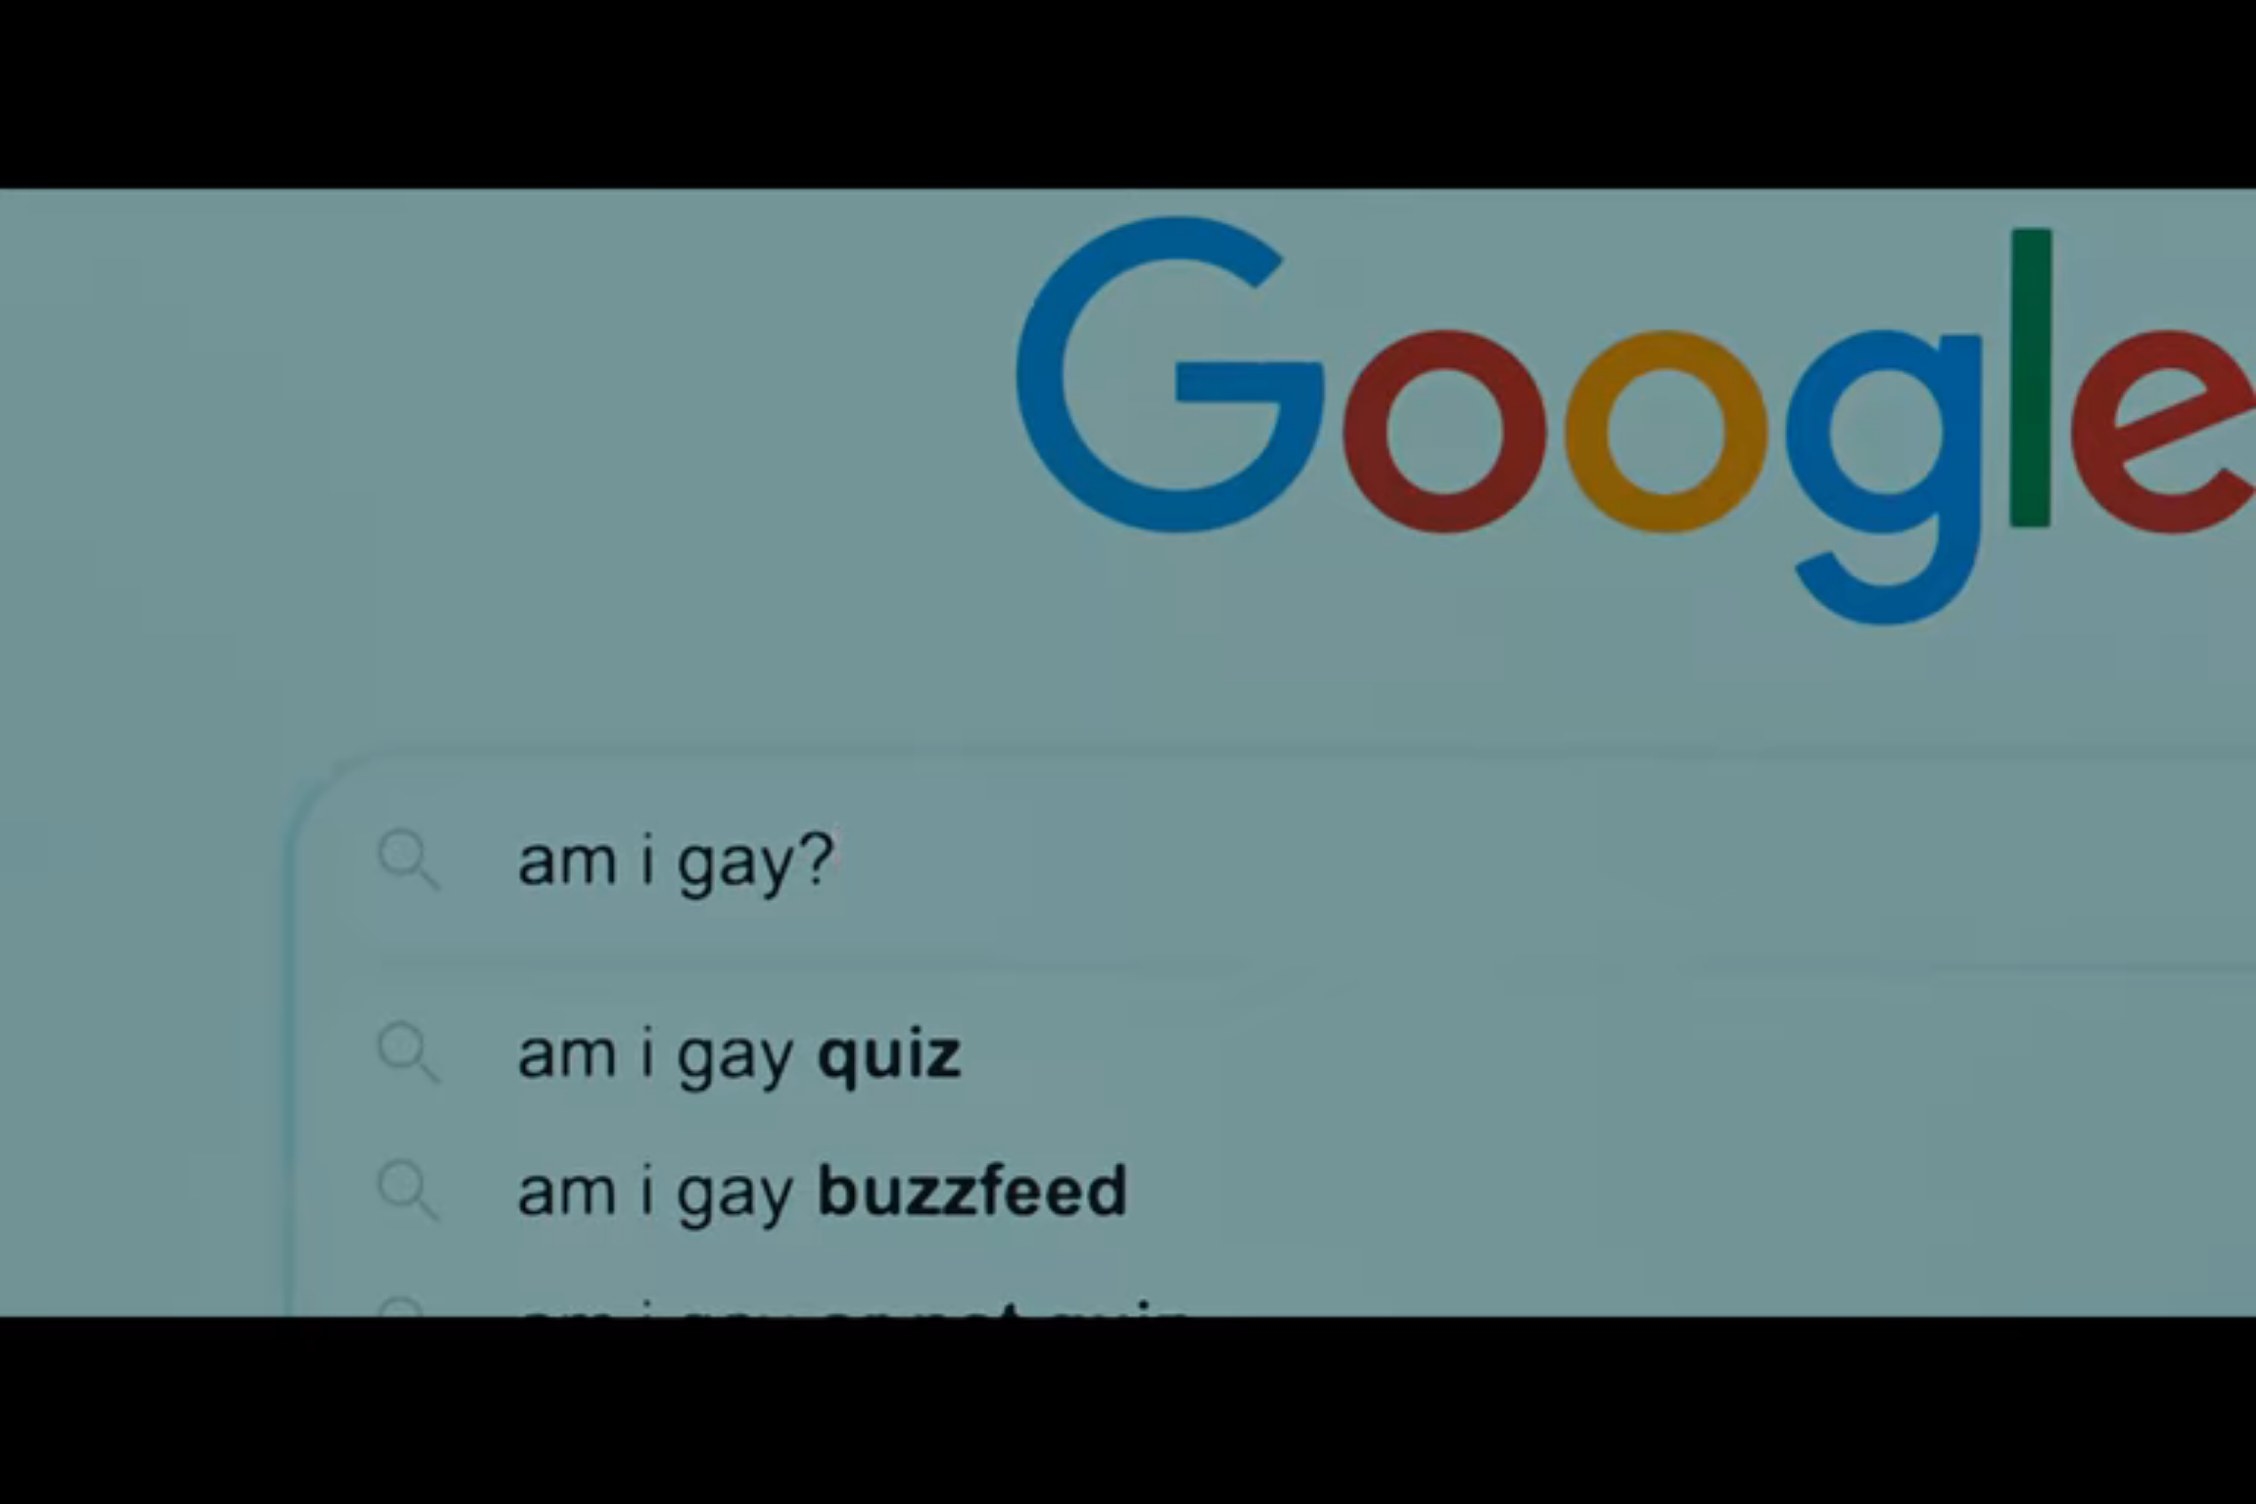 Am i gay quiz heartstopper